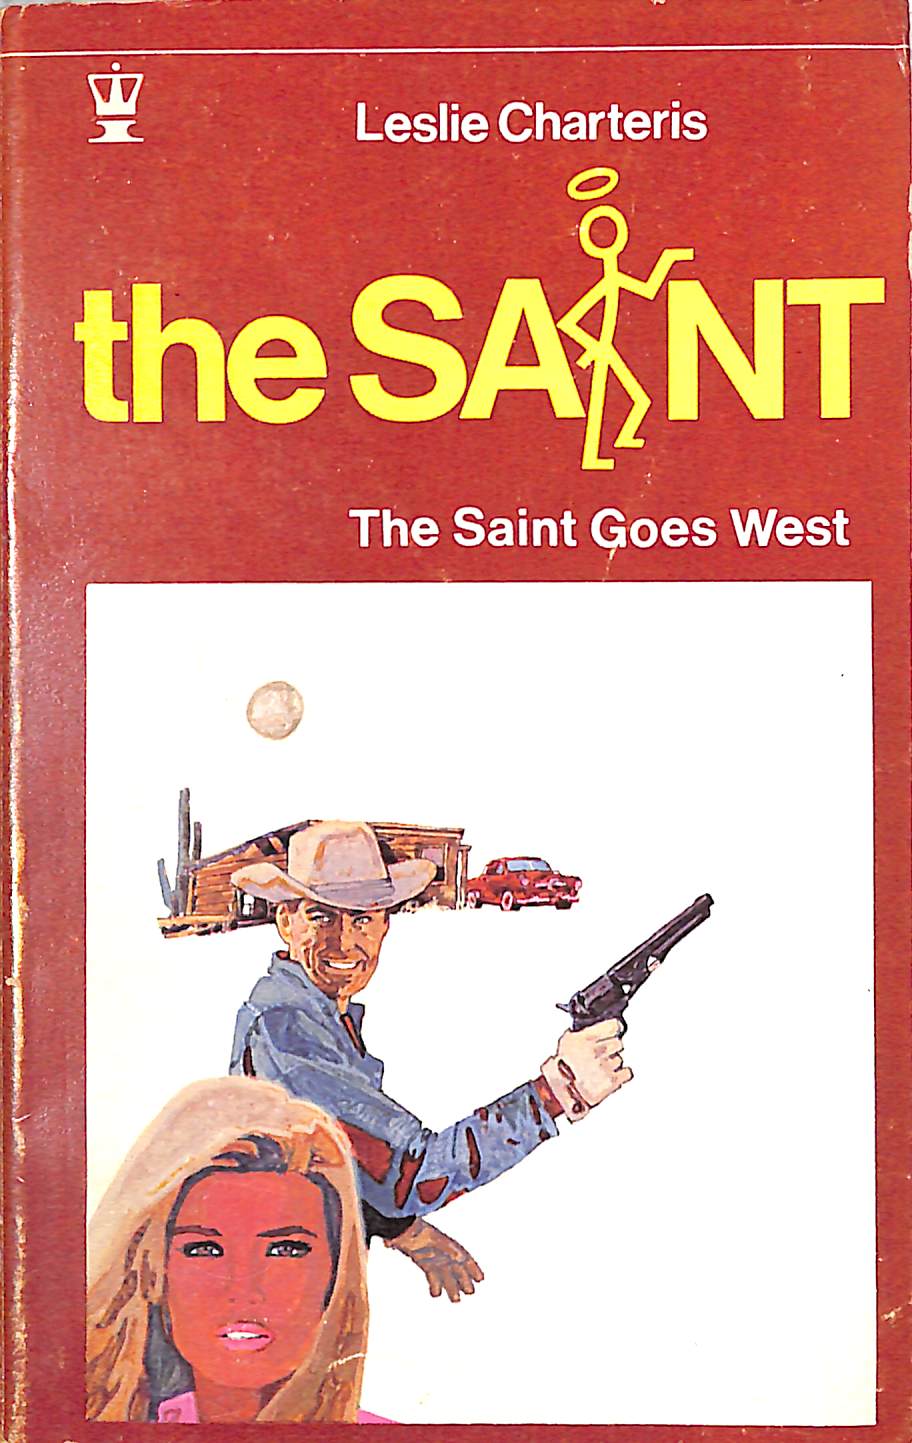 "The Saint: The Saint Goes West" 1968 CHARTERIS, Leslie